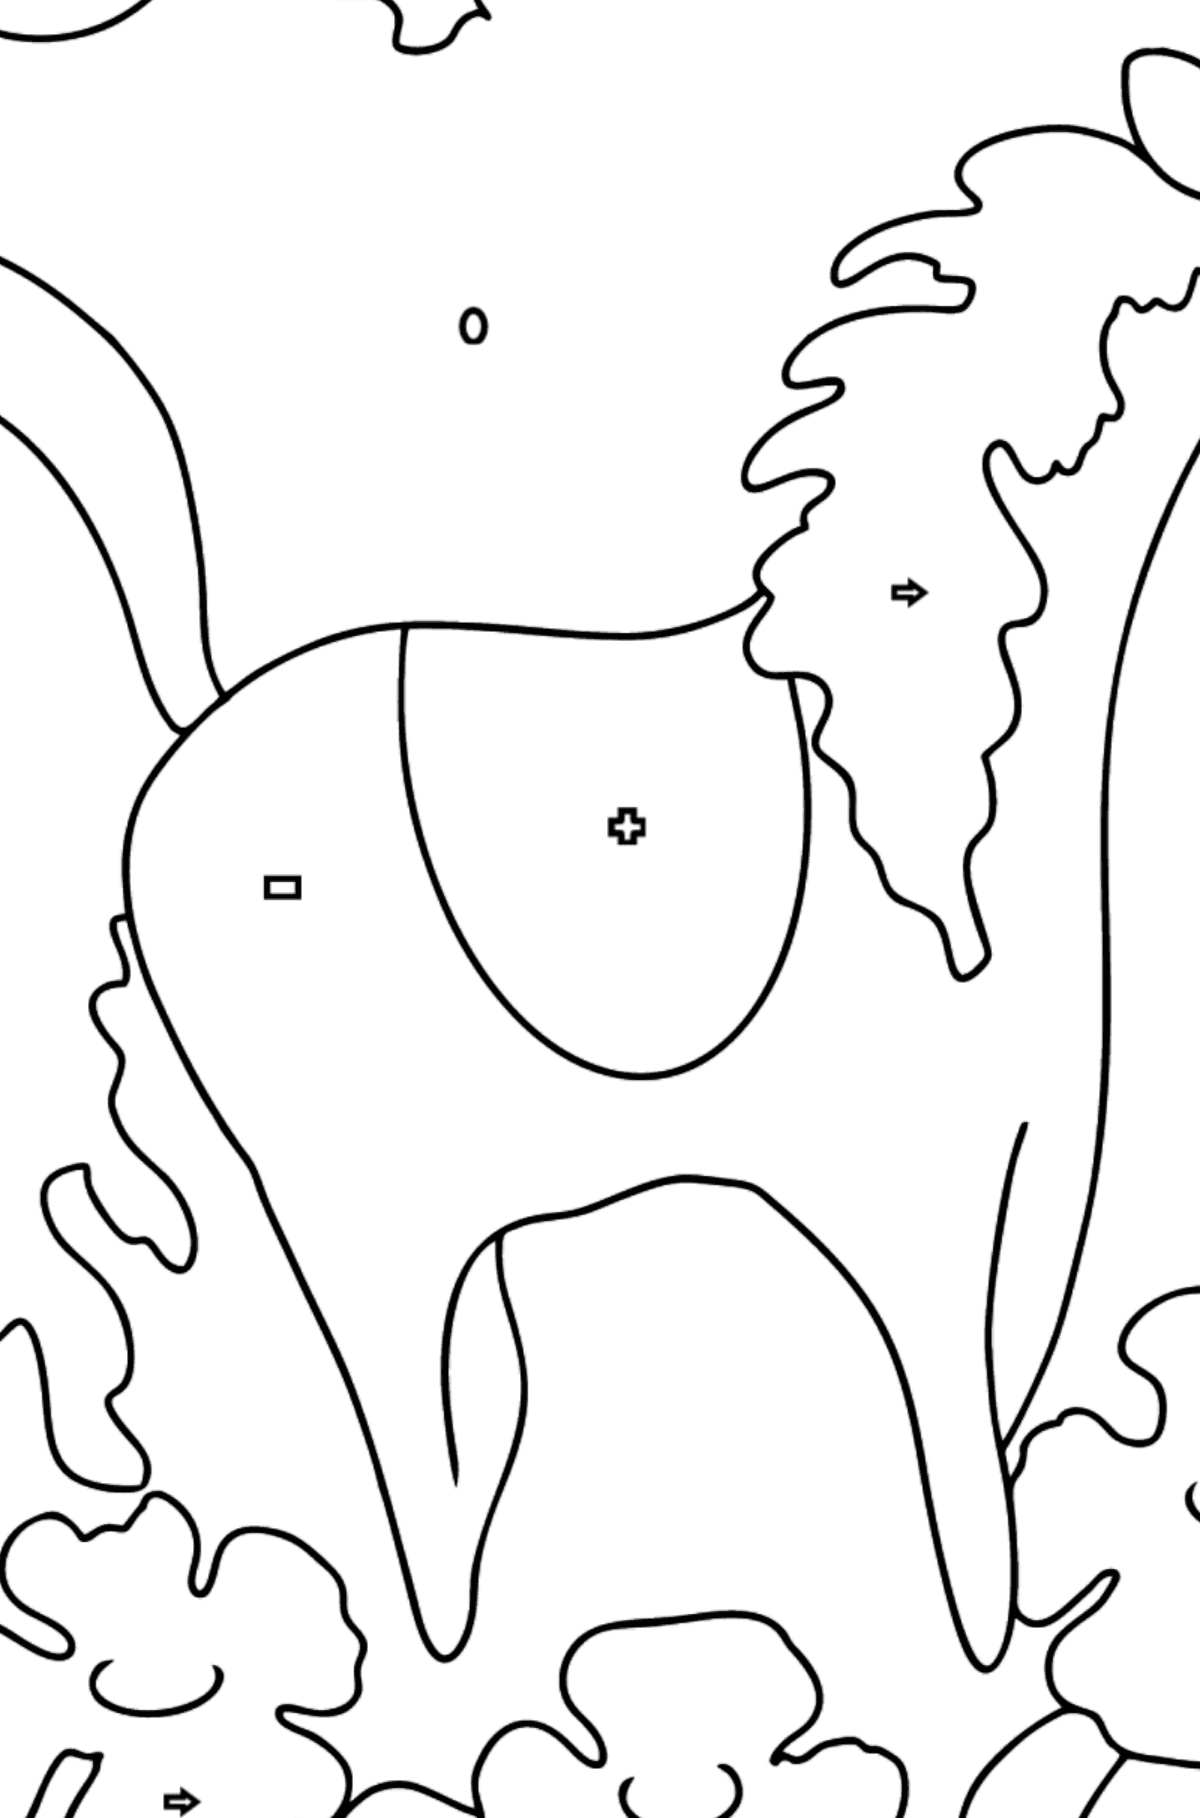 Tegning til farvning charmerende hest (let) - Farvelægning af geometriske figurer for børn